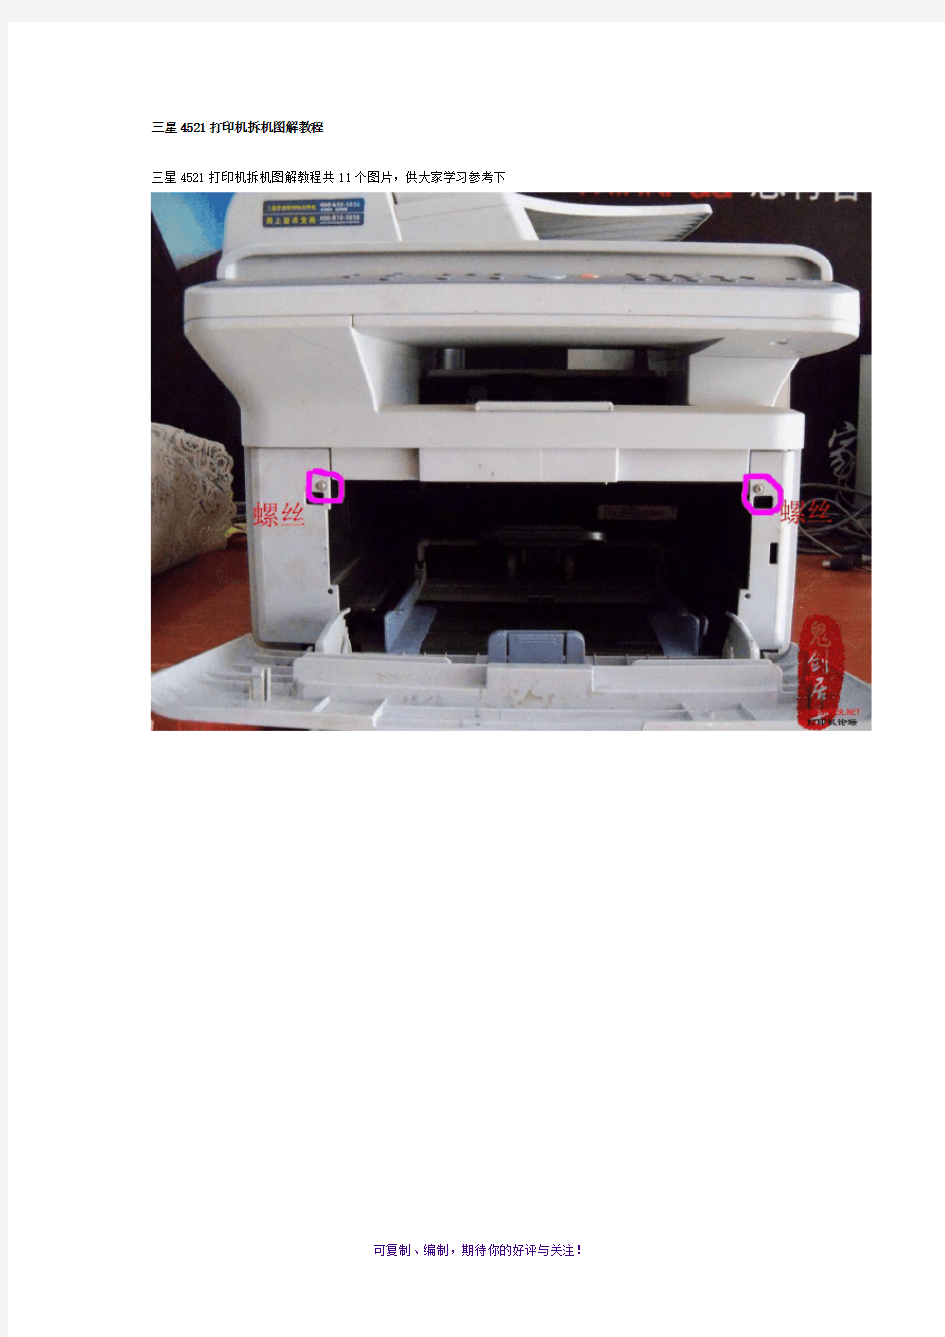 三星4521打印机拆机图解教程